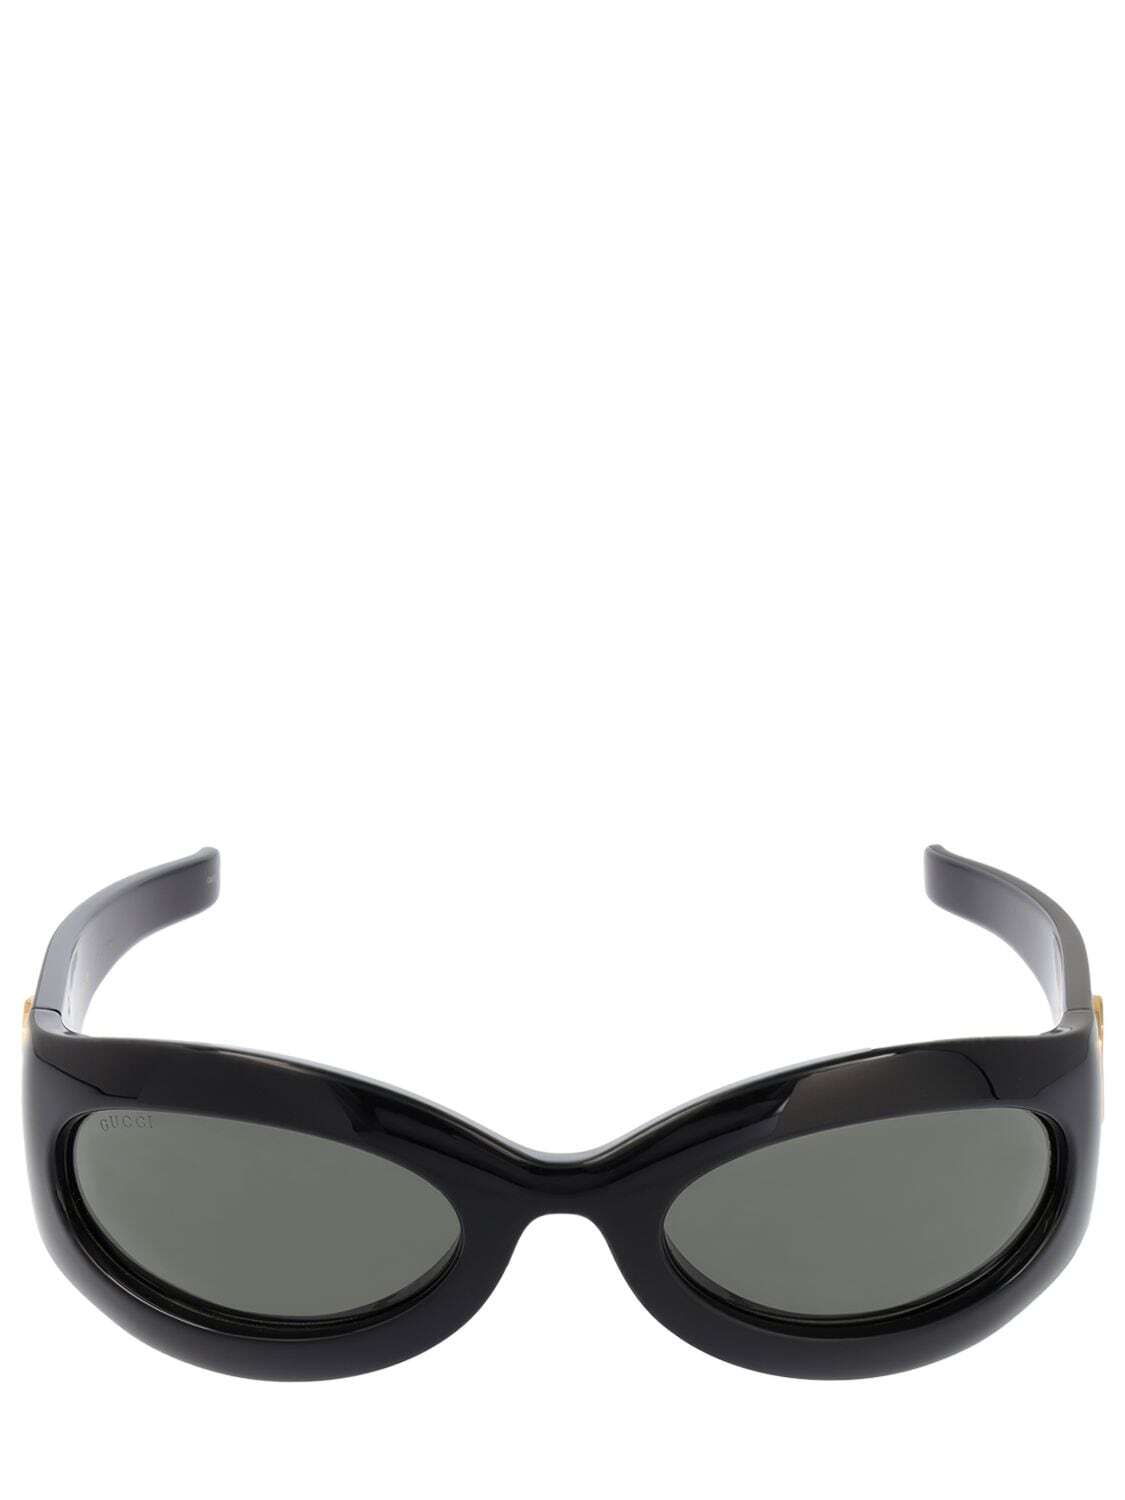 GUCCI Cat-eye Acetate Sunglasses in black / grey